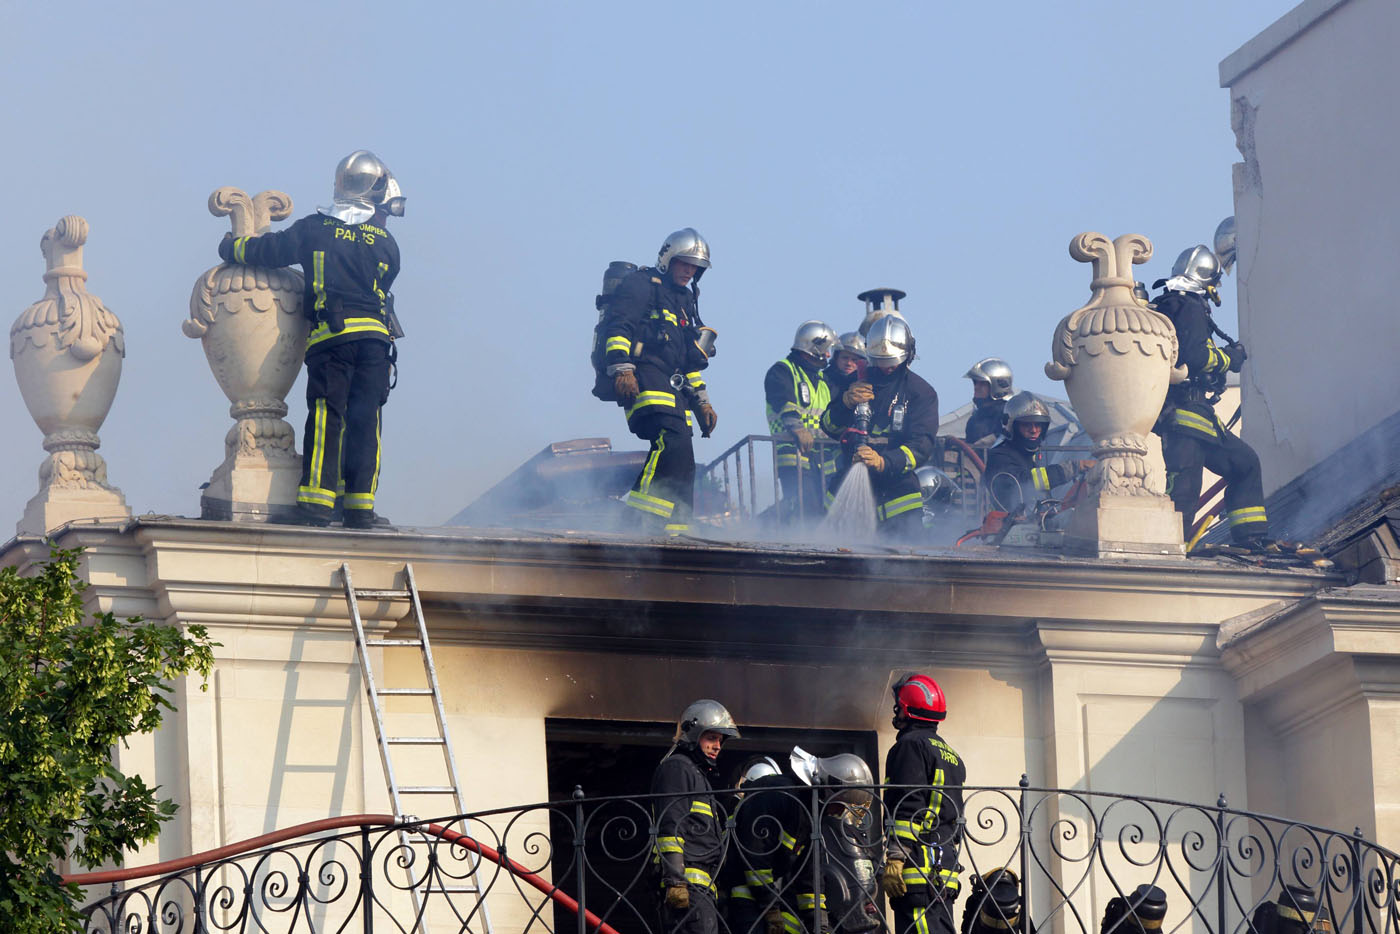 La mansión Lambert, joya arquitectónica de París, arrasada por las llamas (Fotos)